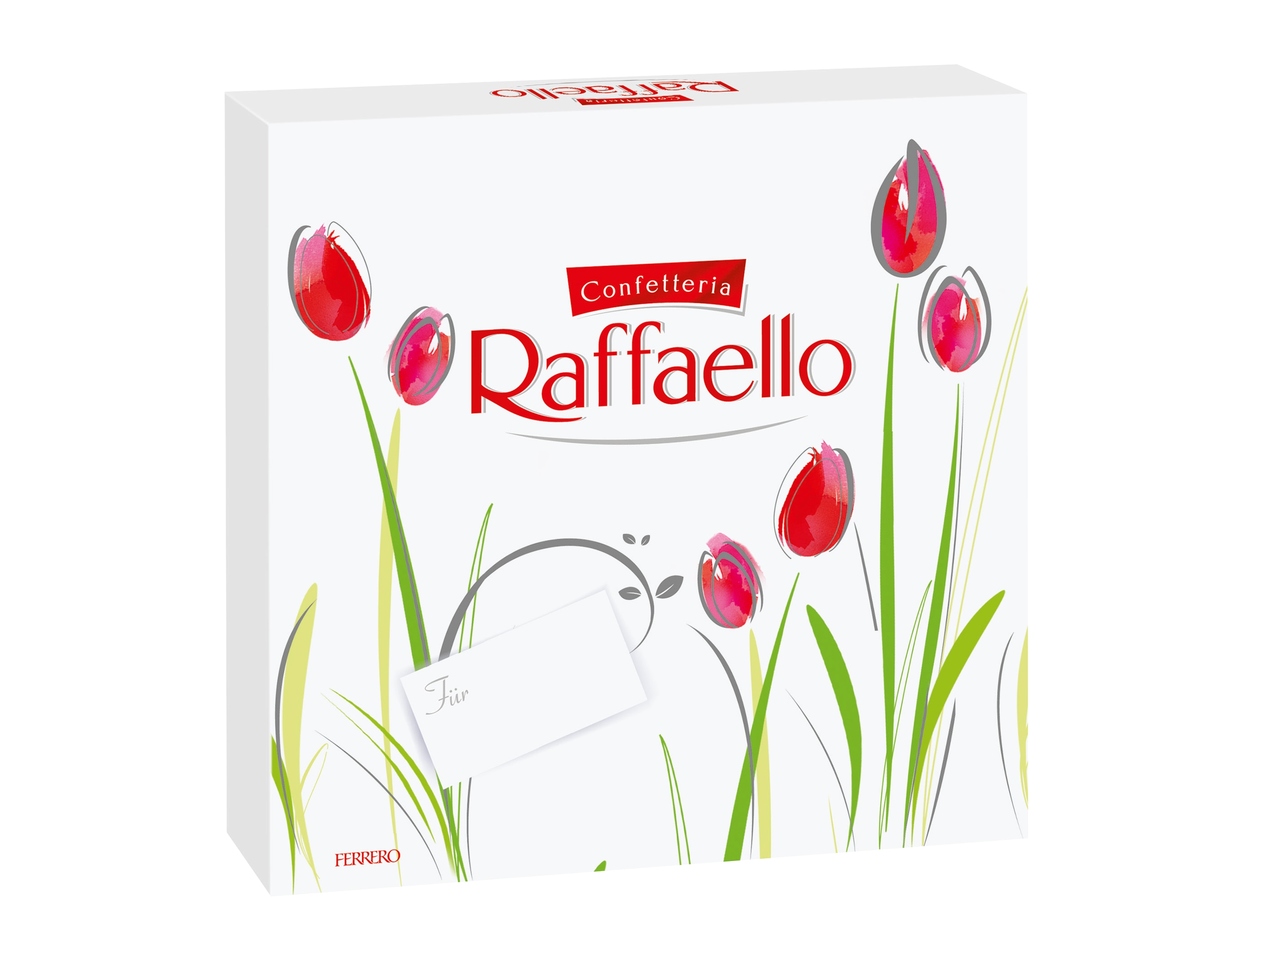 Raffaello printemps Ferrero